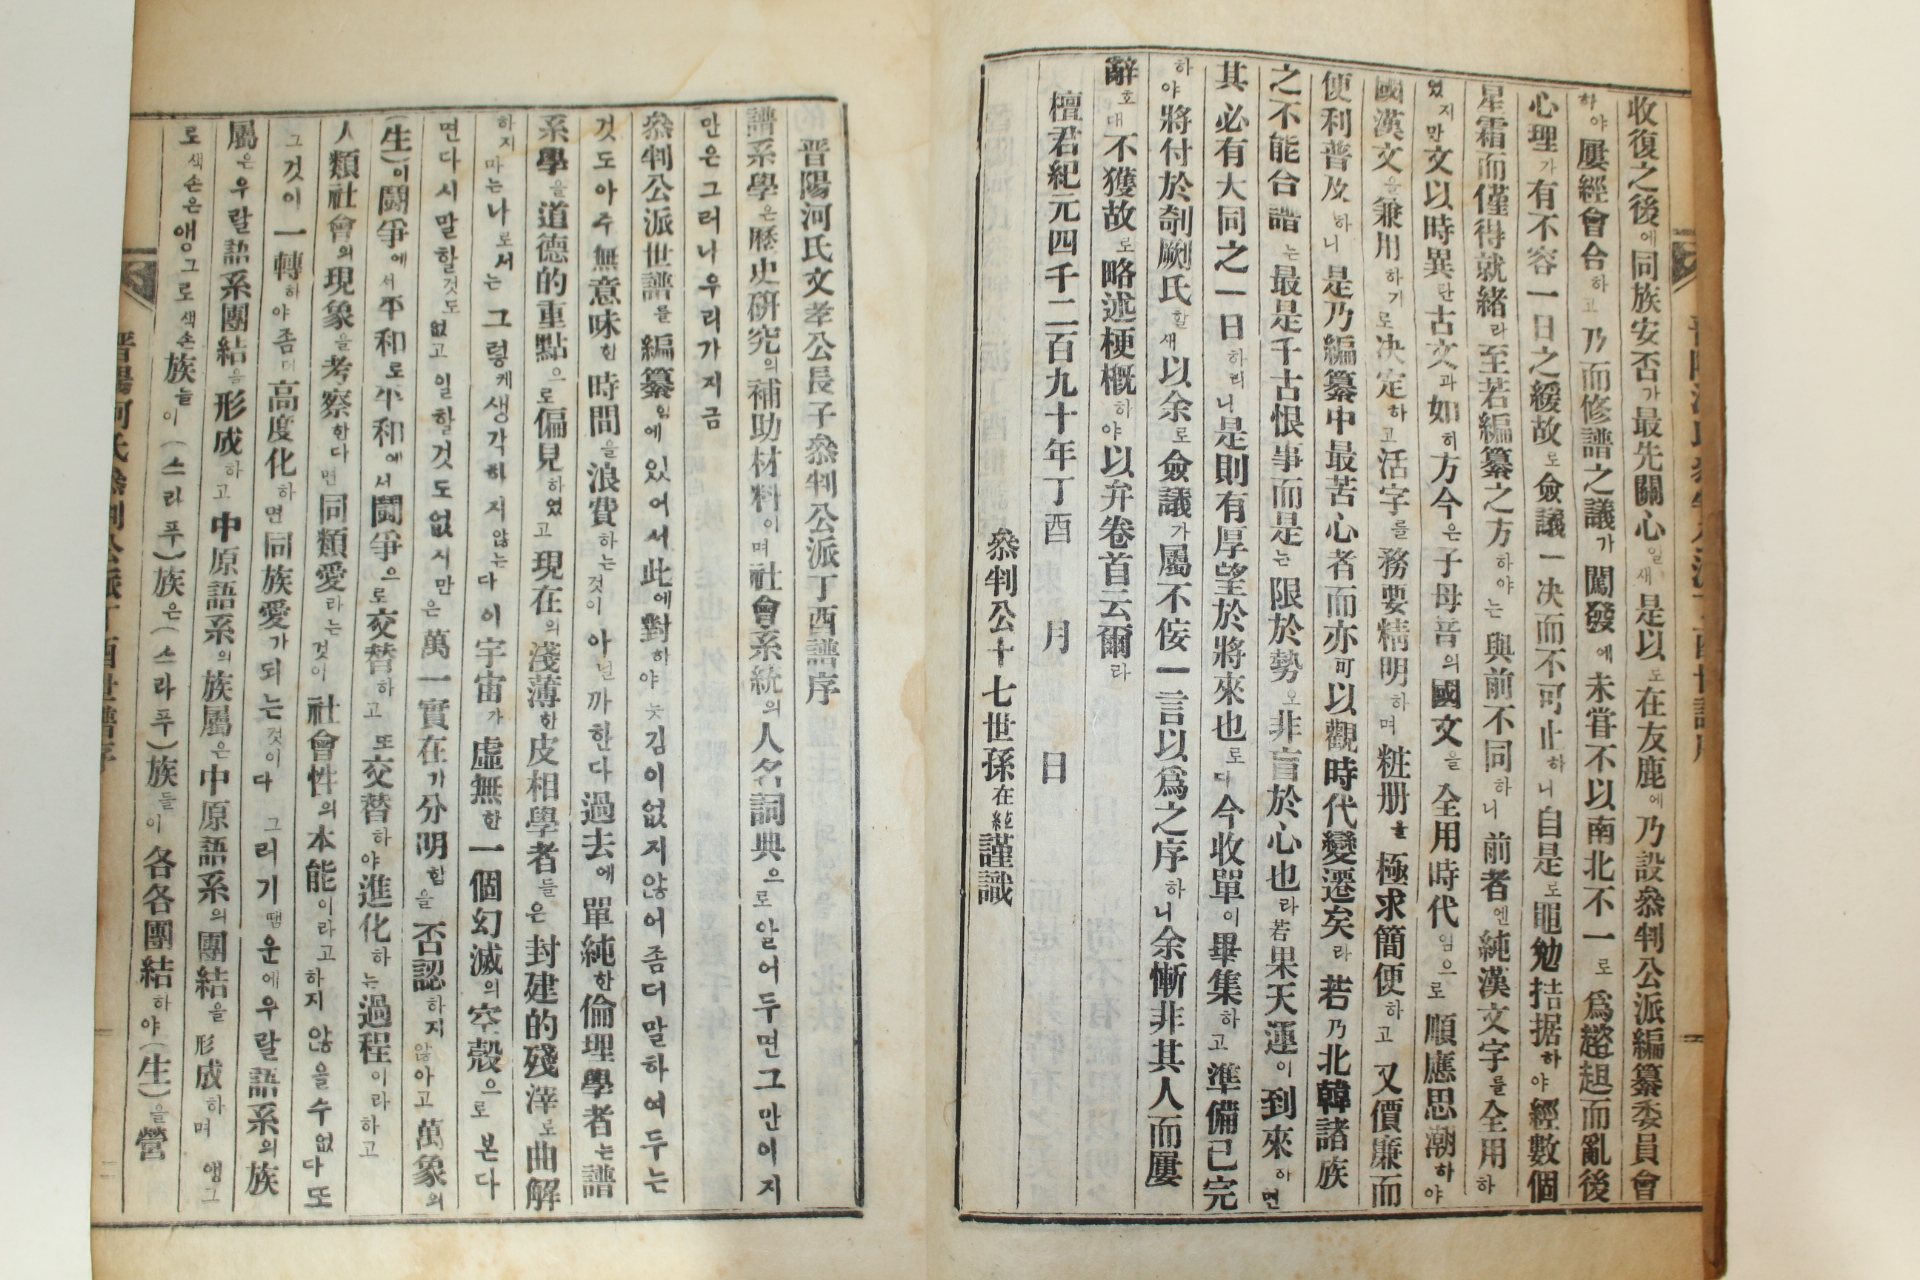 1957년 연활자본 진양하씨참판공파보(晋陽河氏參判公派譜) 9책